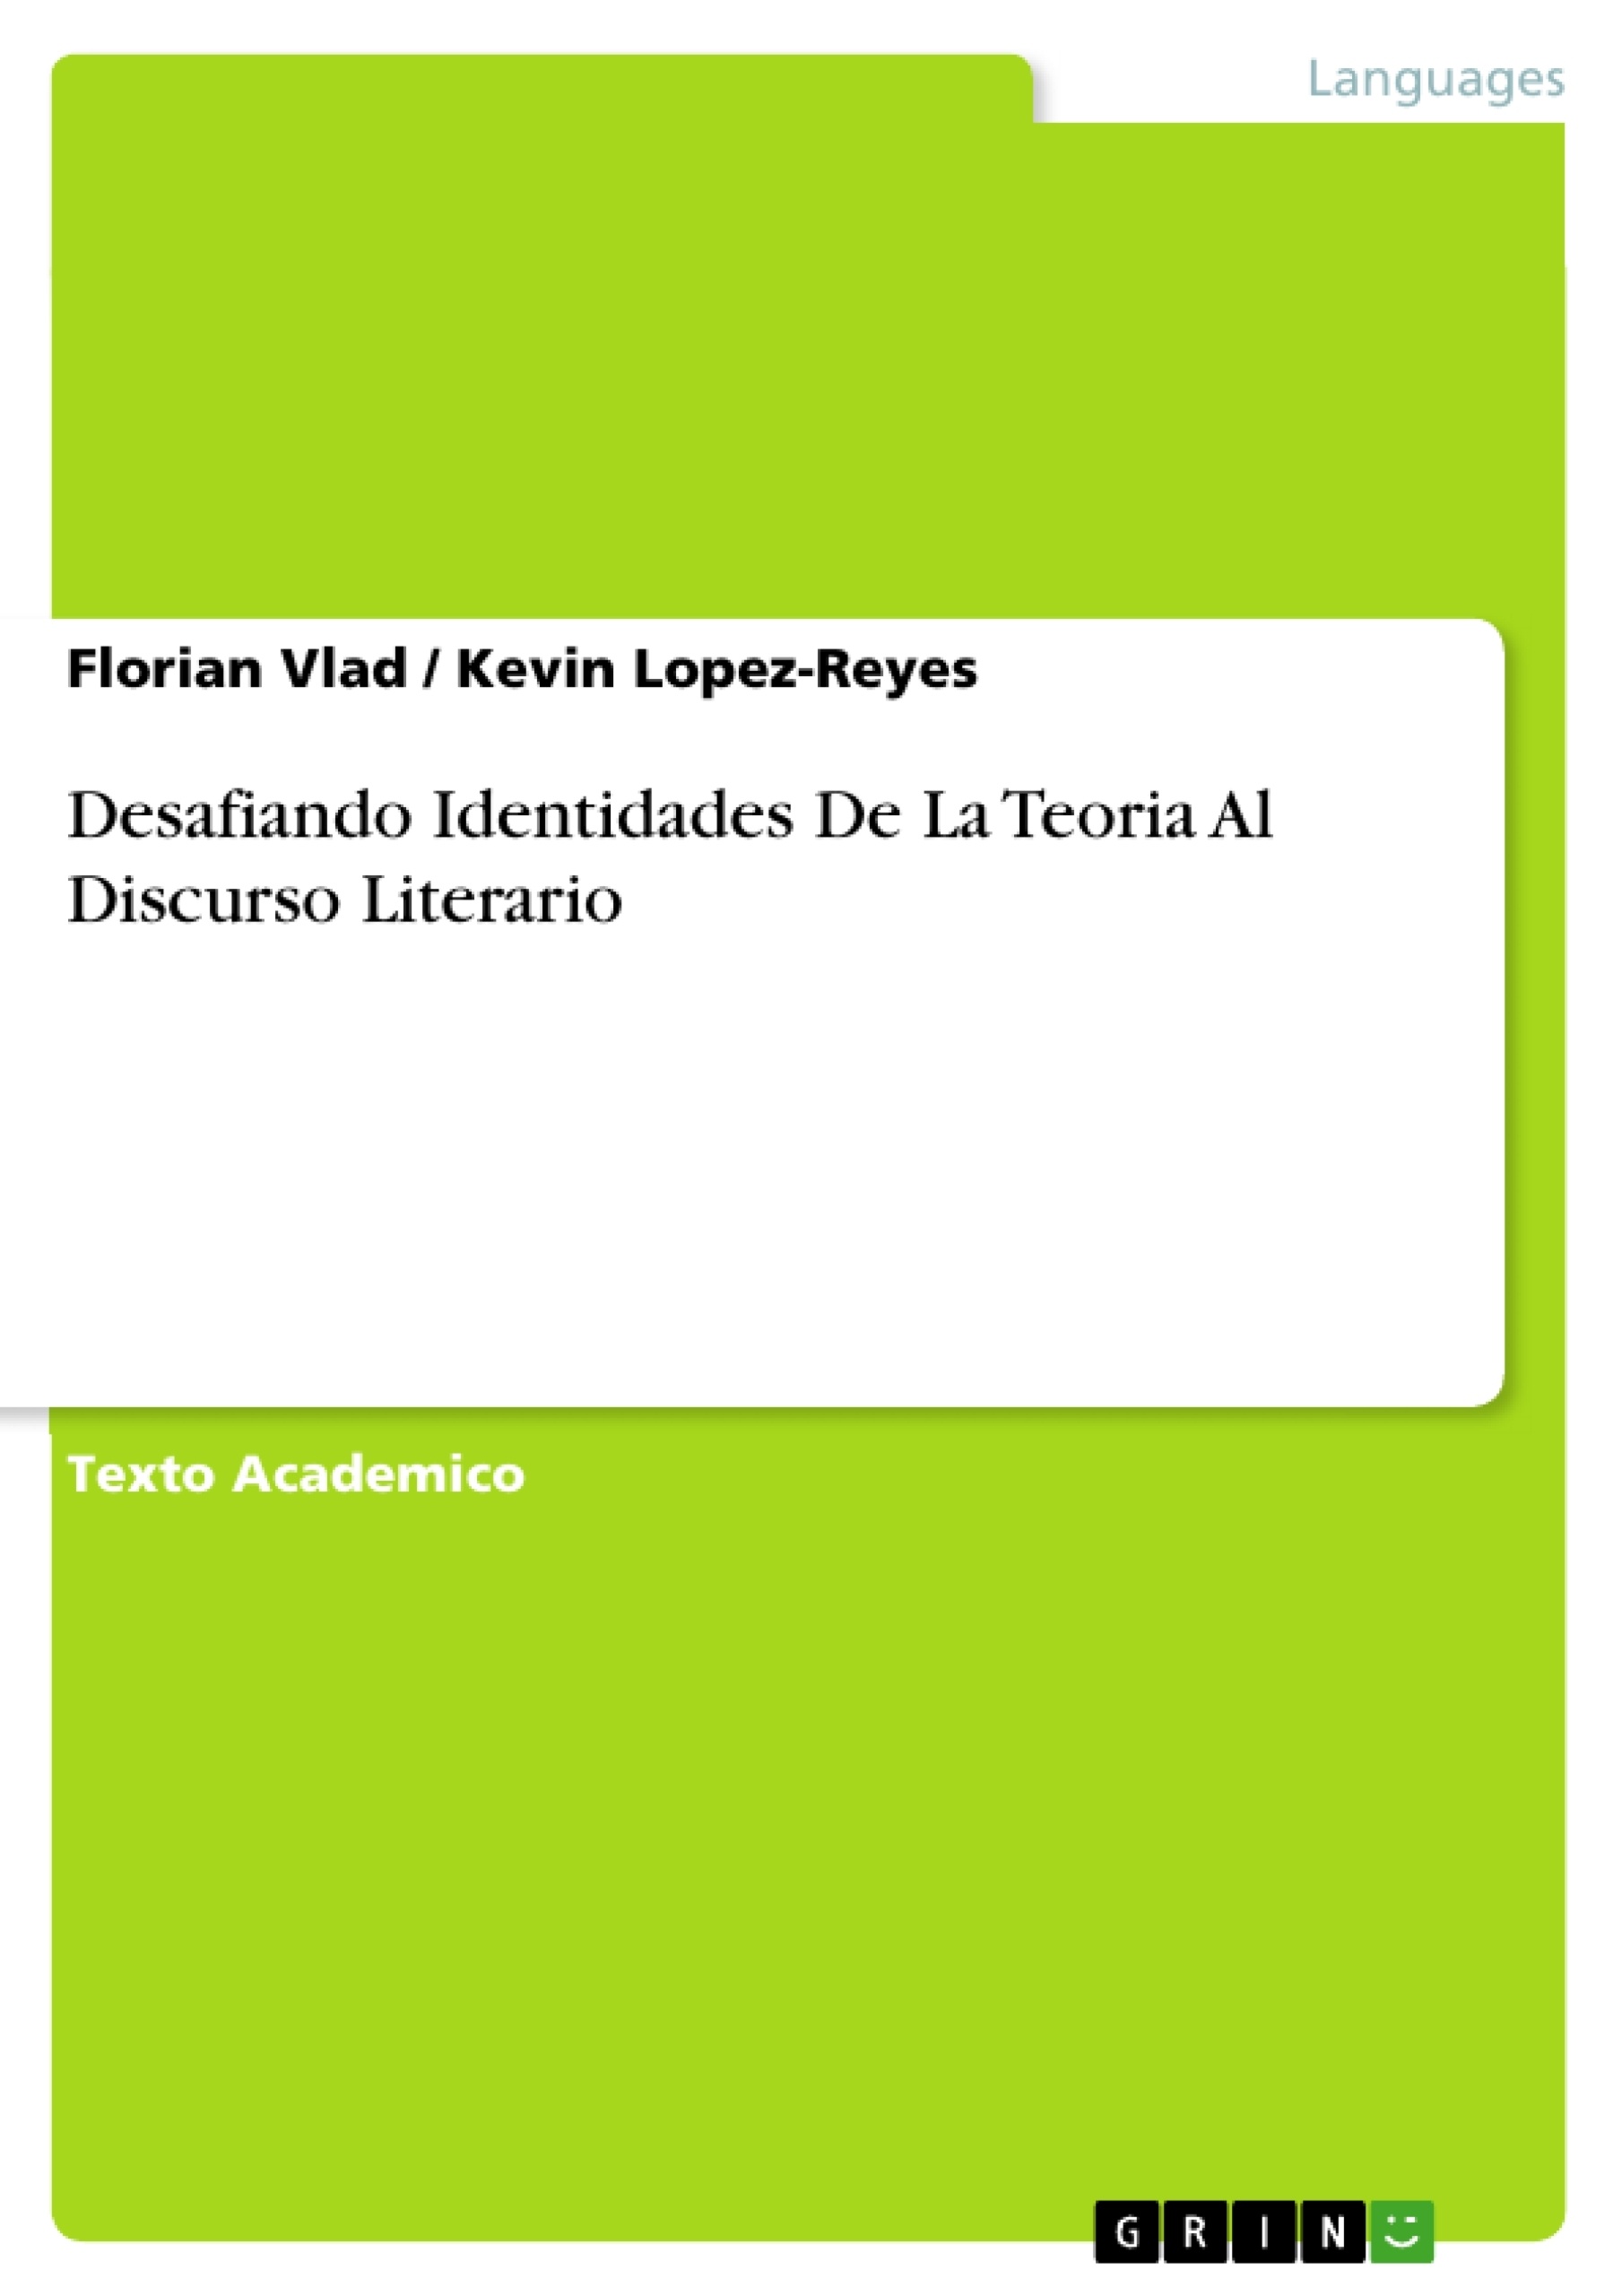 Título: Desafiando Identidades De La Teoria Al Discurso Literario